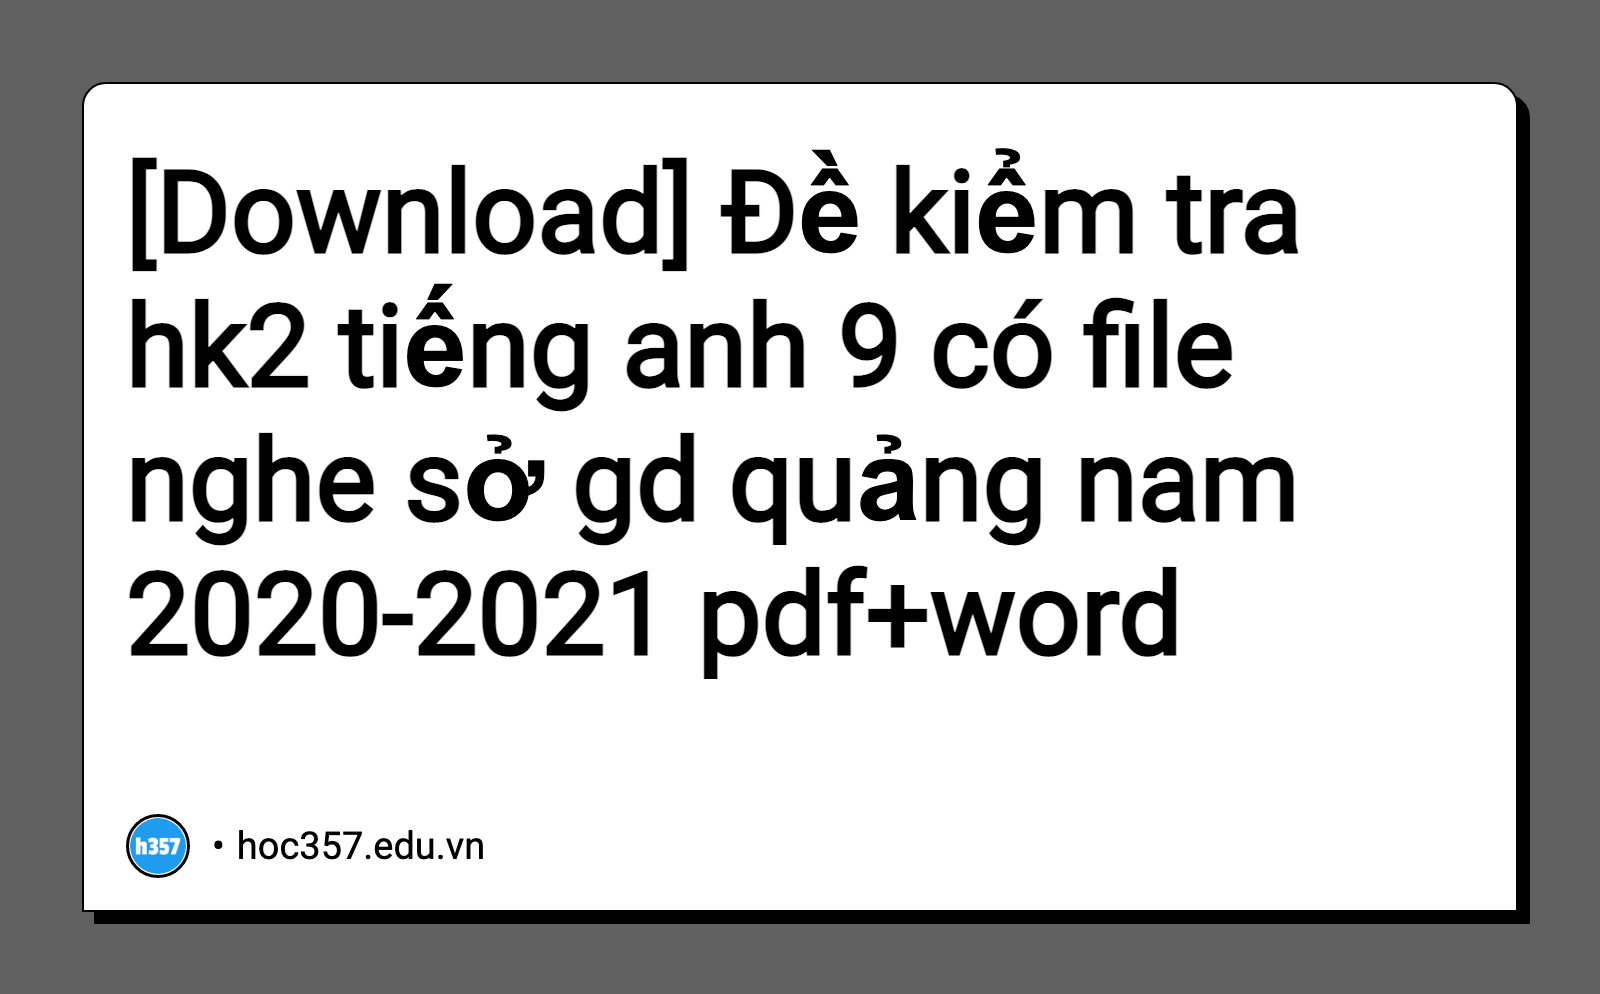 Hình minh họa Đề kiểm tra hk2 tiếng anh 9 có file nghe sở gd quảng nam 2020-2021